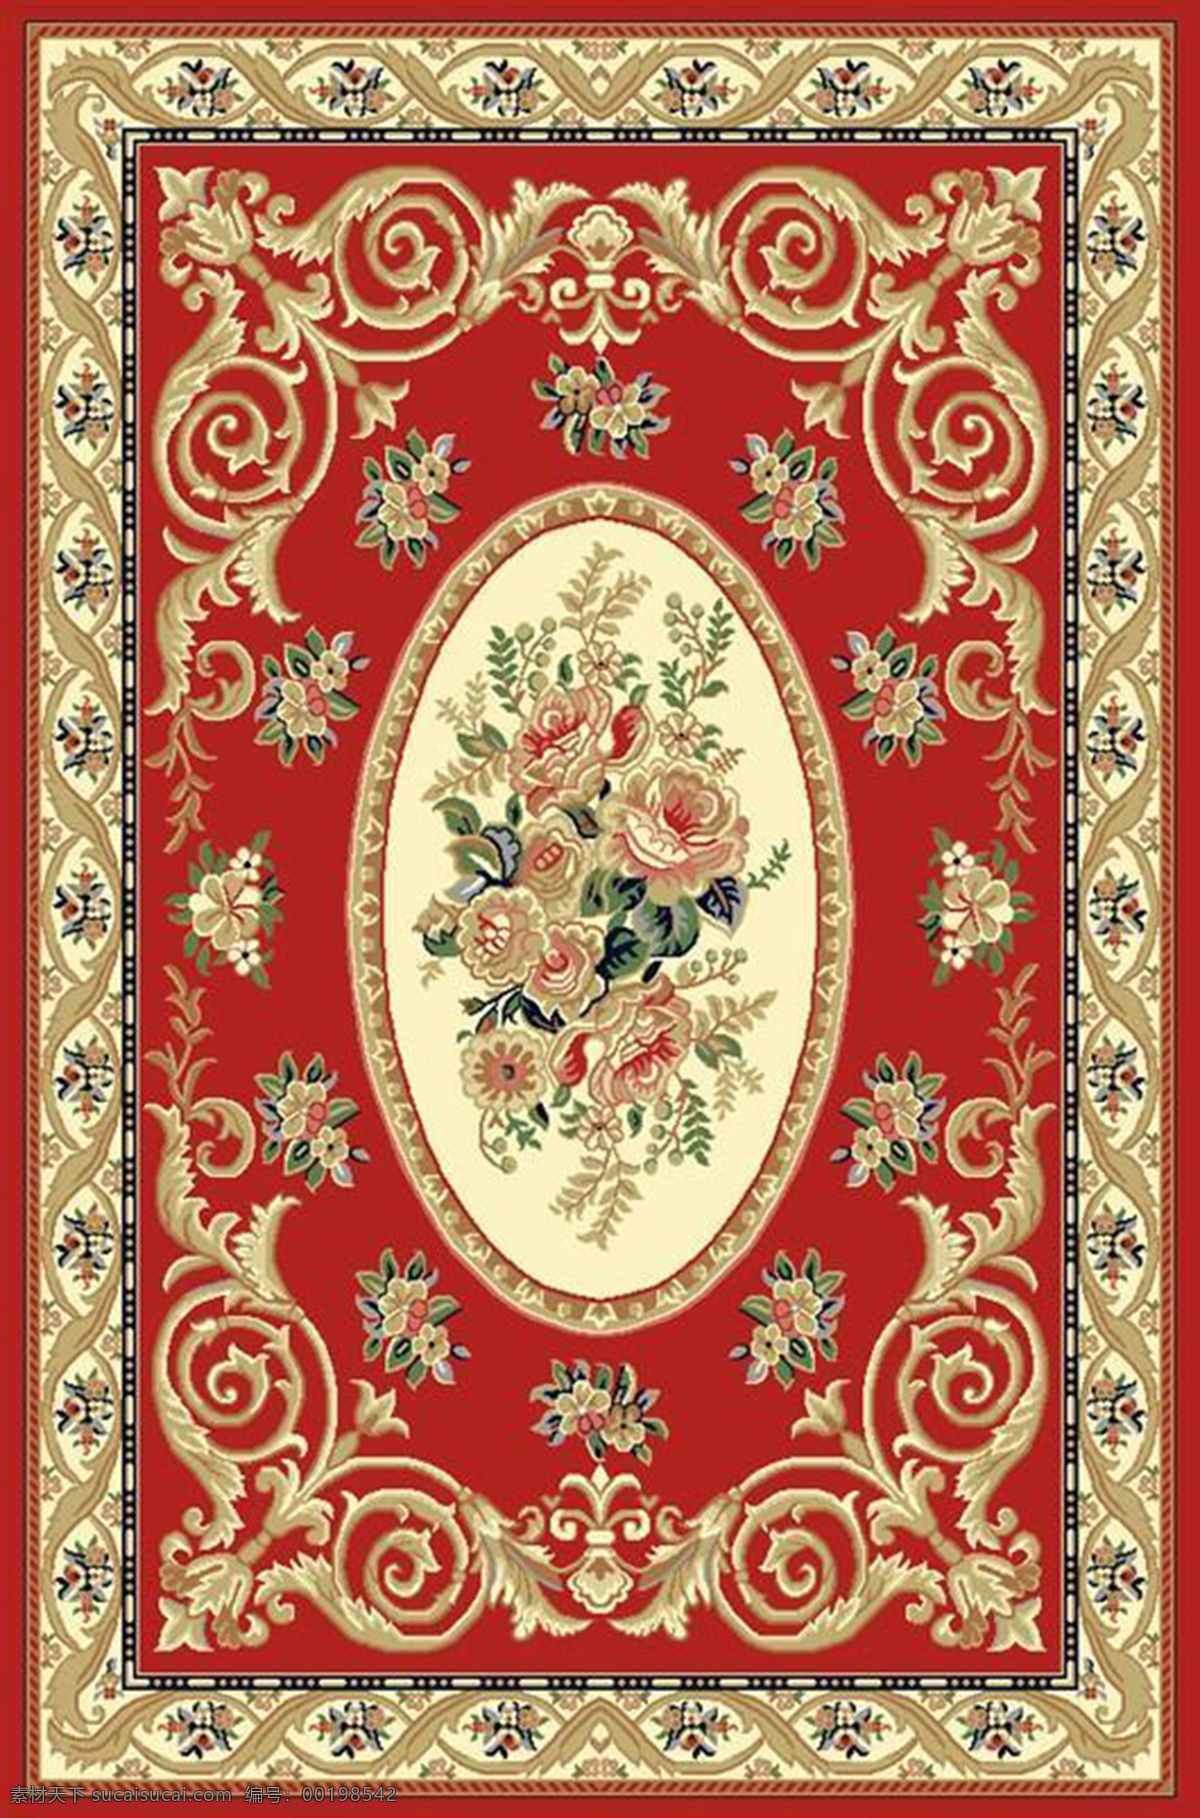 欧式地毯 地毯 地毯印染 北欧地毯 地毯印花 文化艺术 传统文化